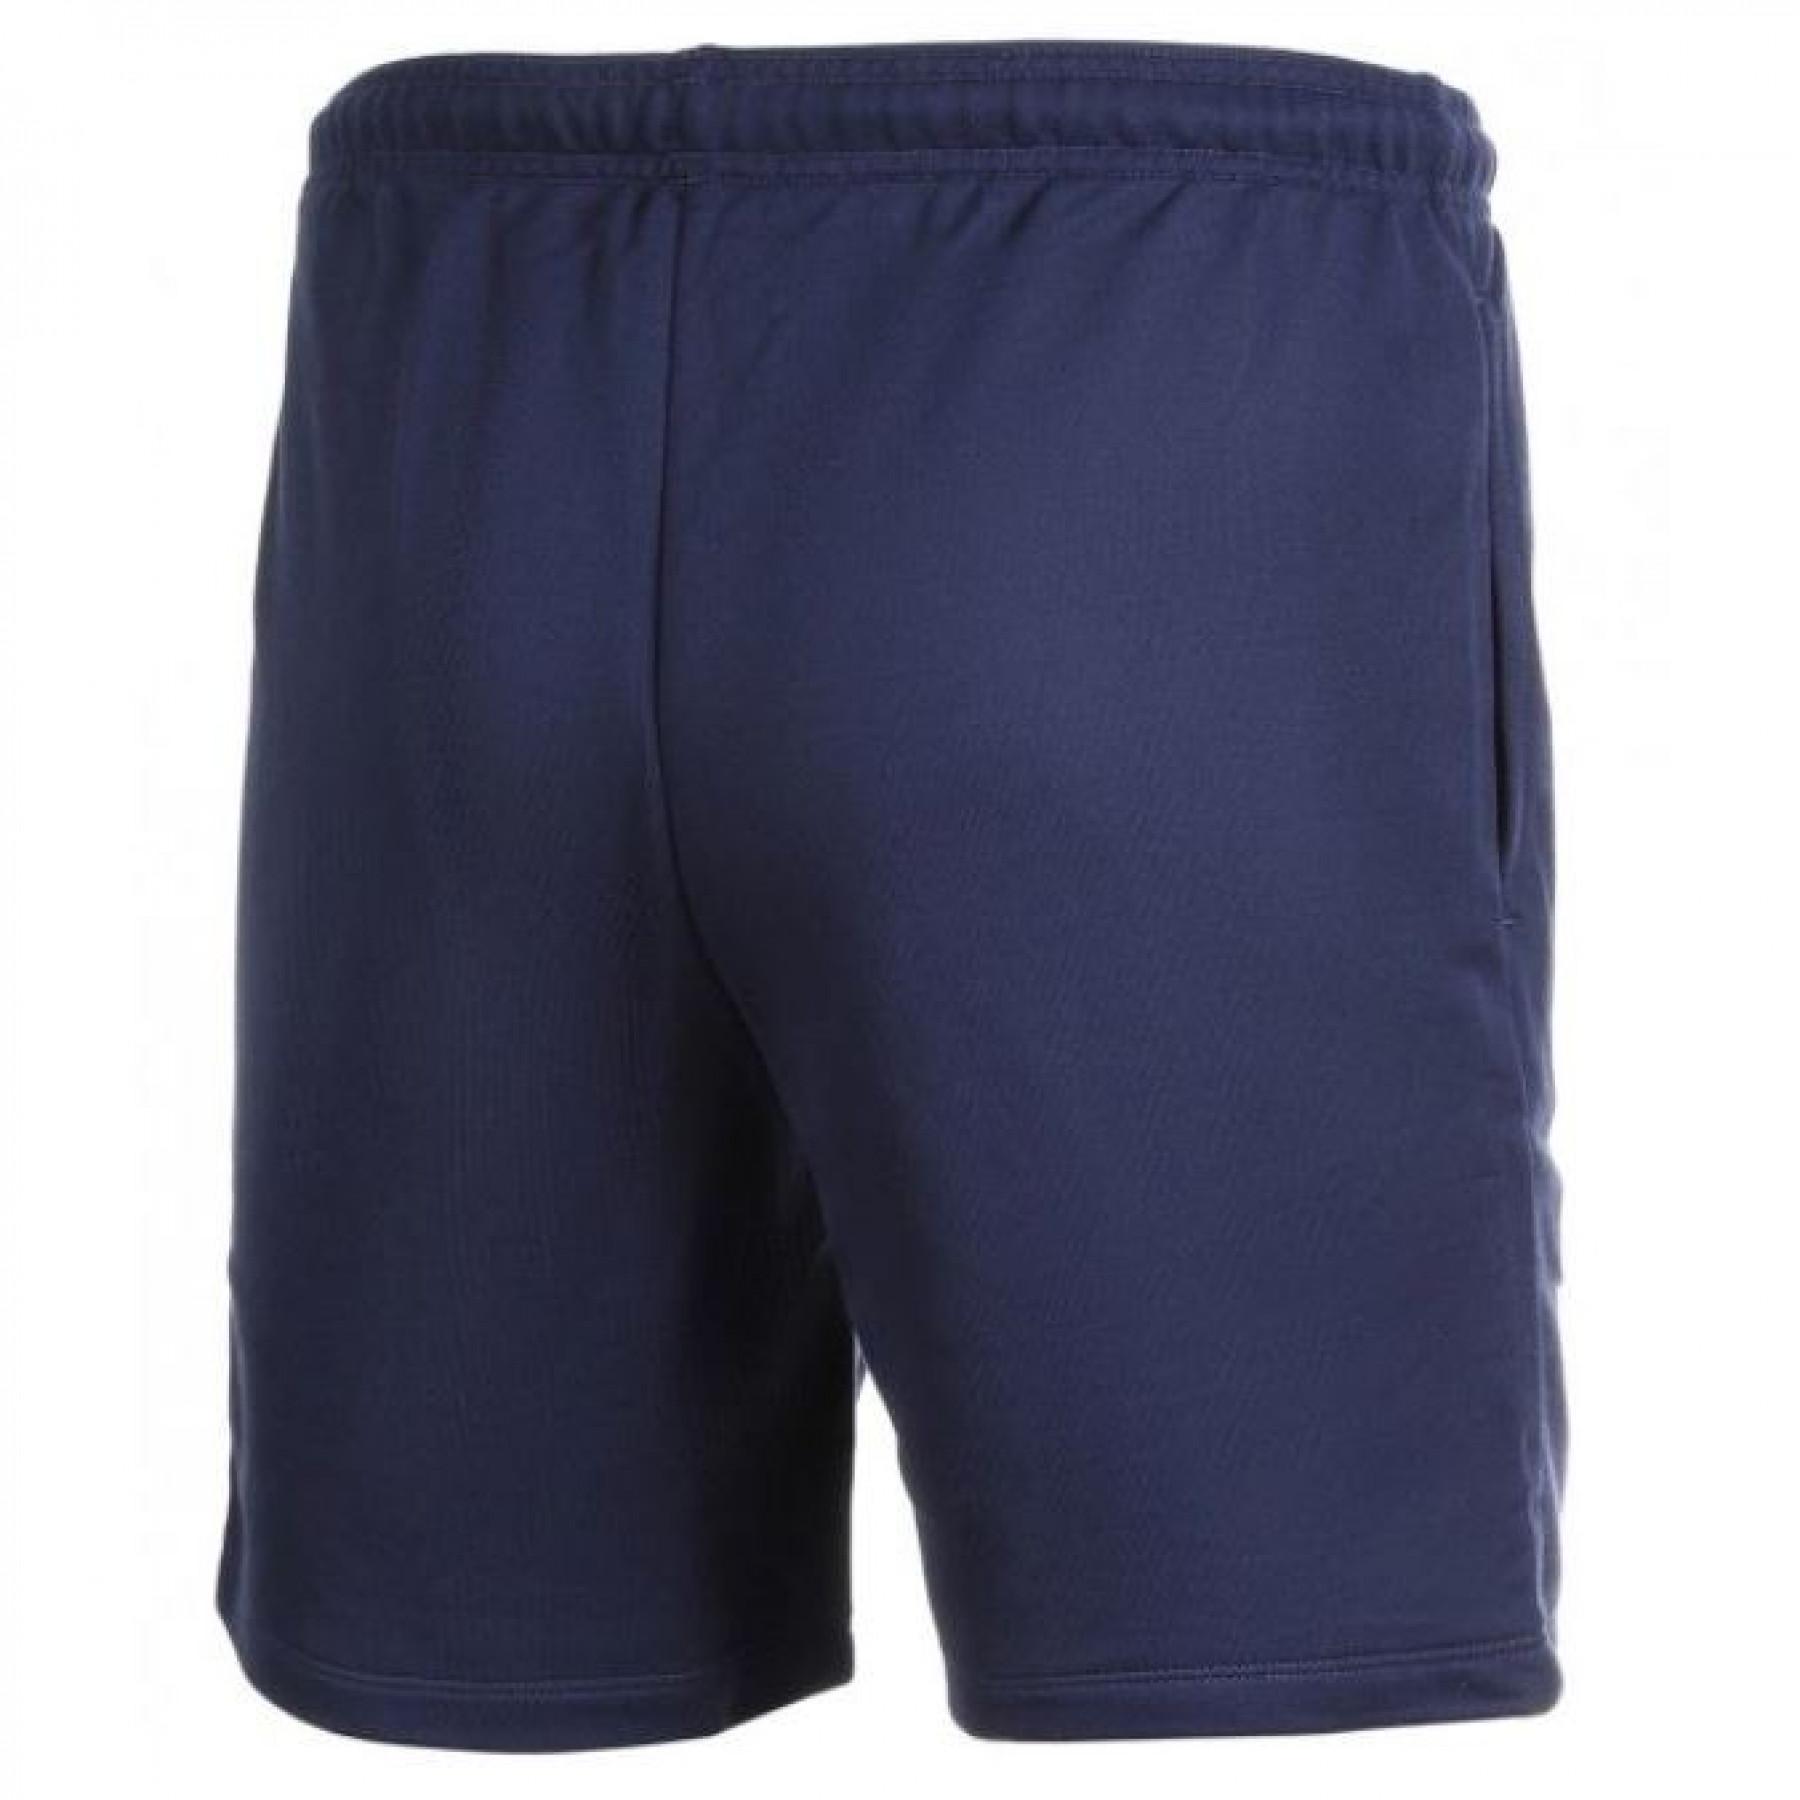 Short Asics Omega 7in - Shorts - Men's Clothing - Fitness